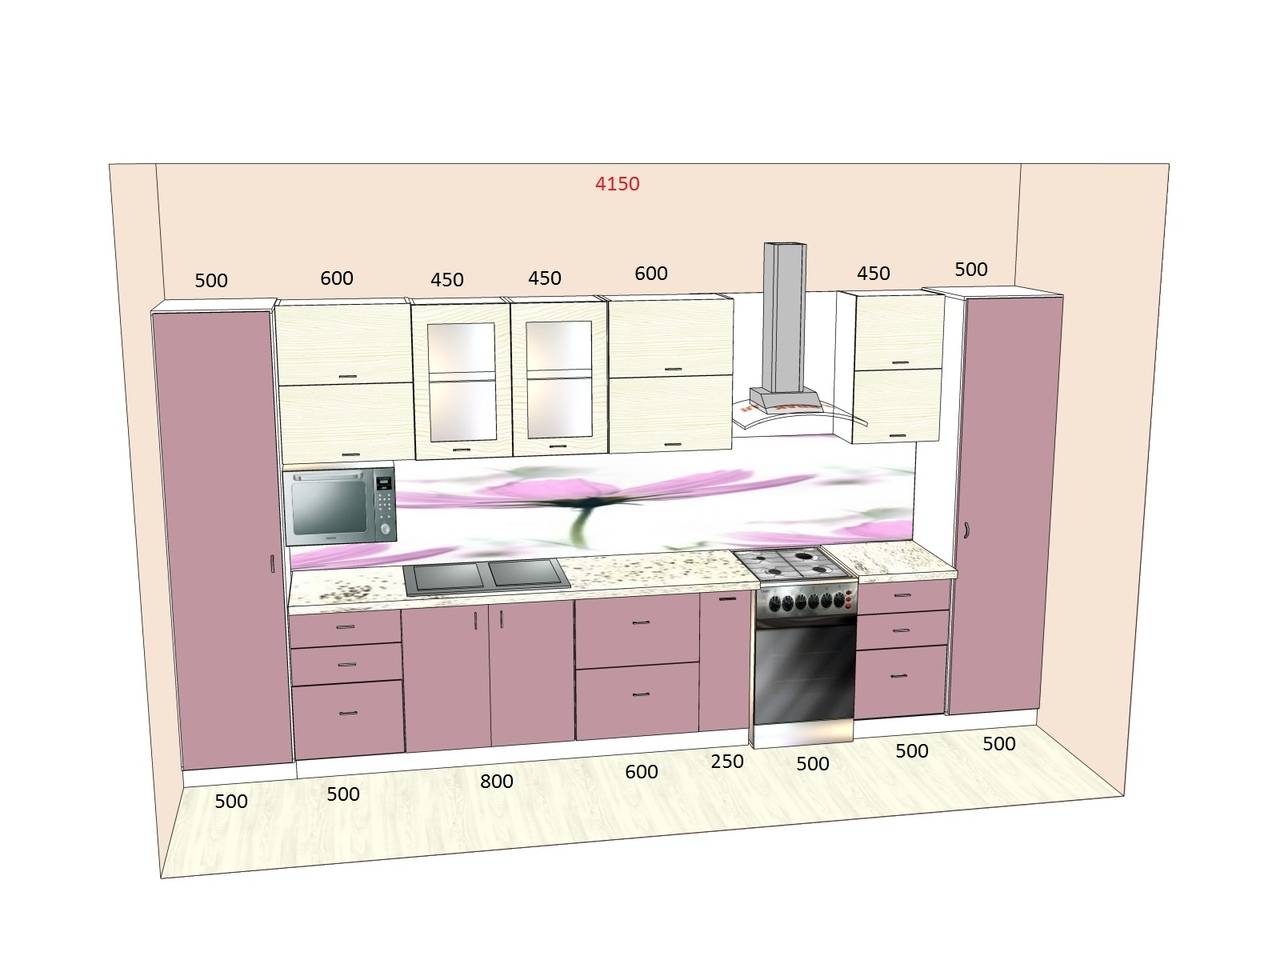 Прямая кухня: фото реальных интерьеров линейной планировки кухни